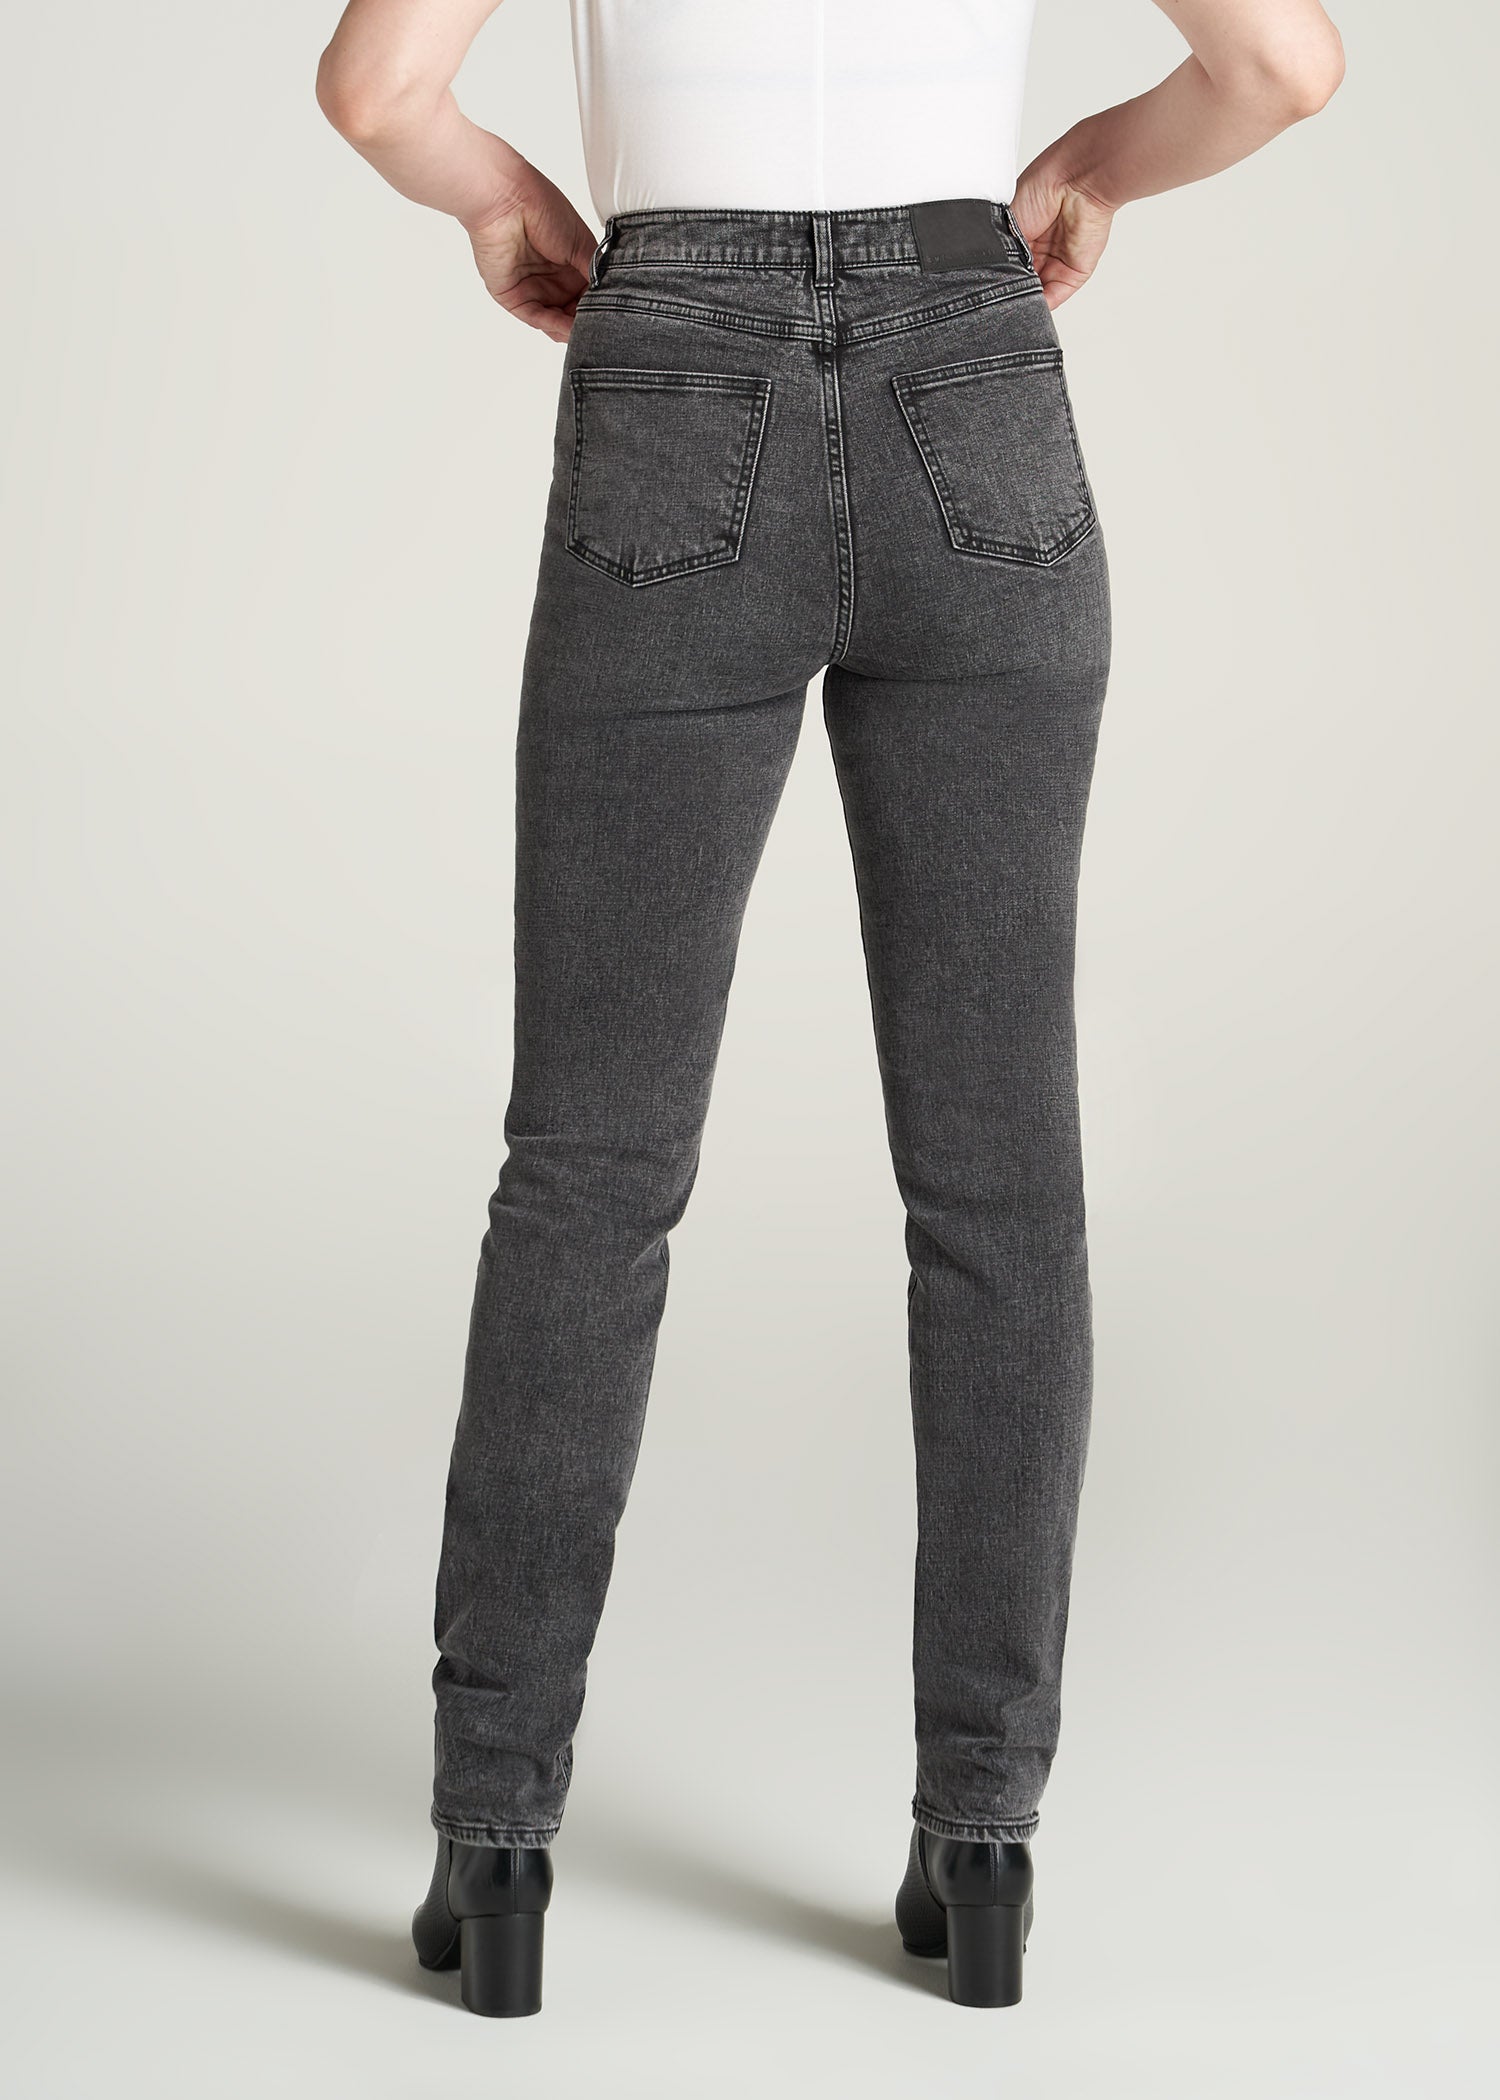 Women's Tall Lola Ultra Slim Jeans Black Wash – American Tall